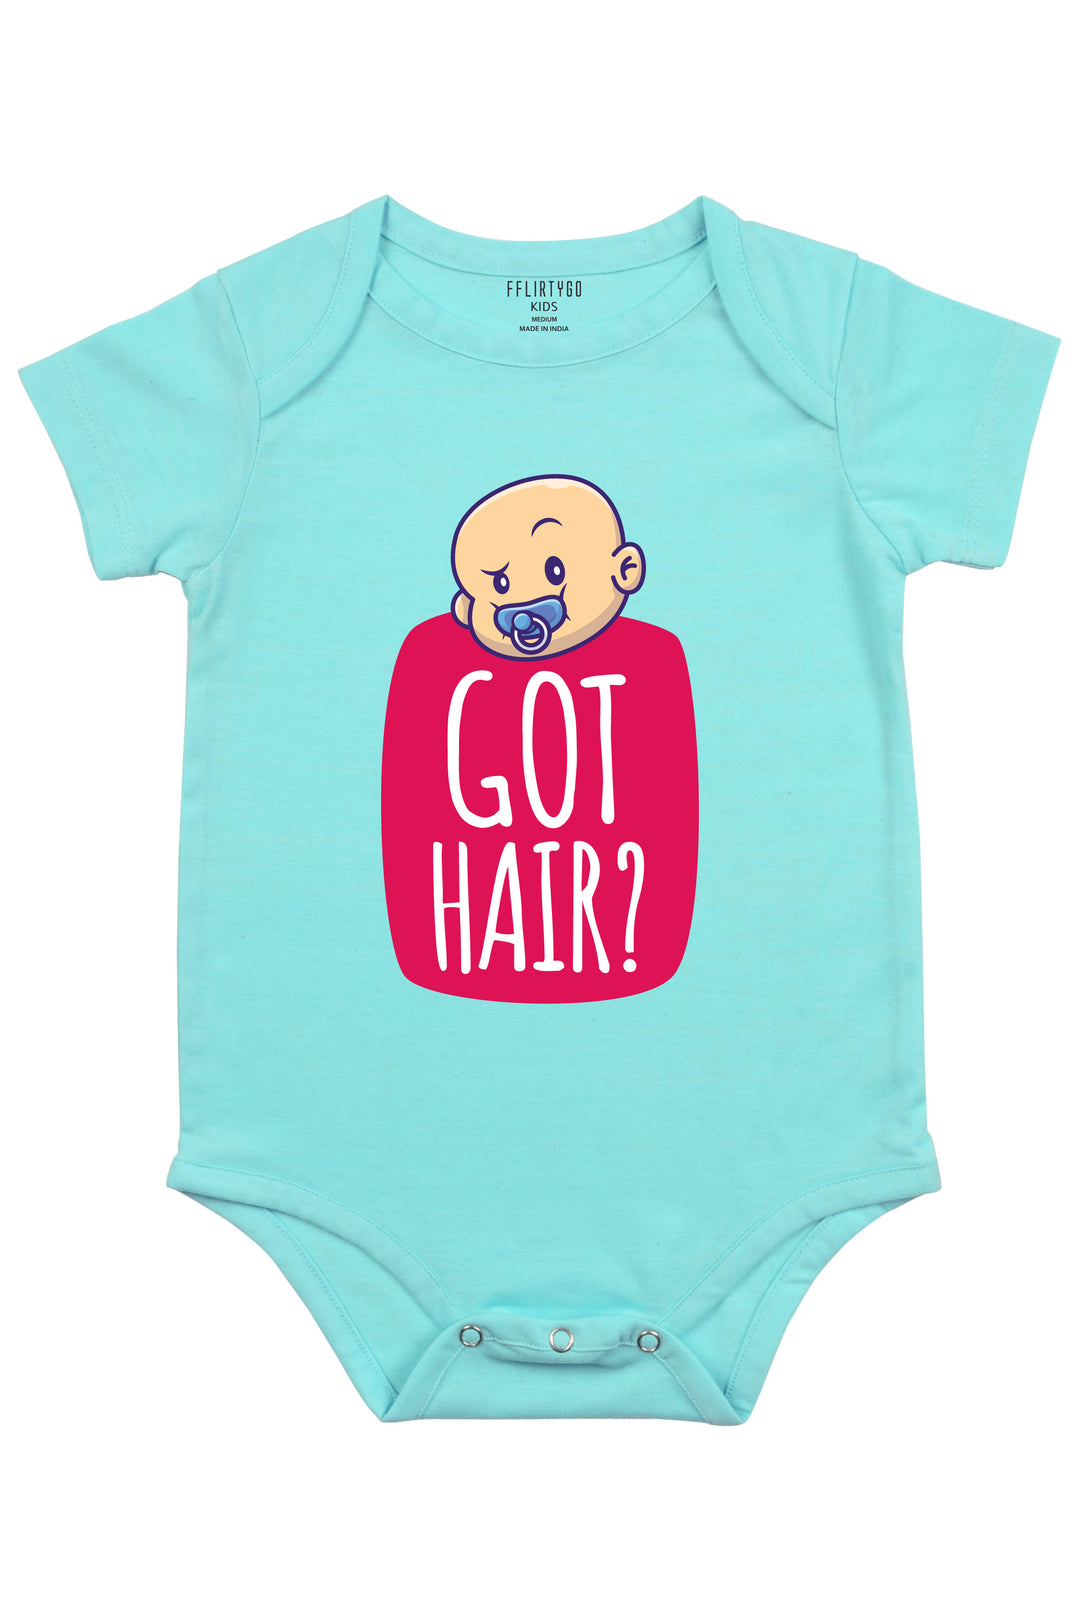 Got Hair? Baby Romper | Onesies